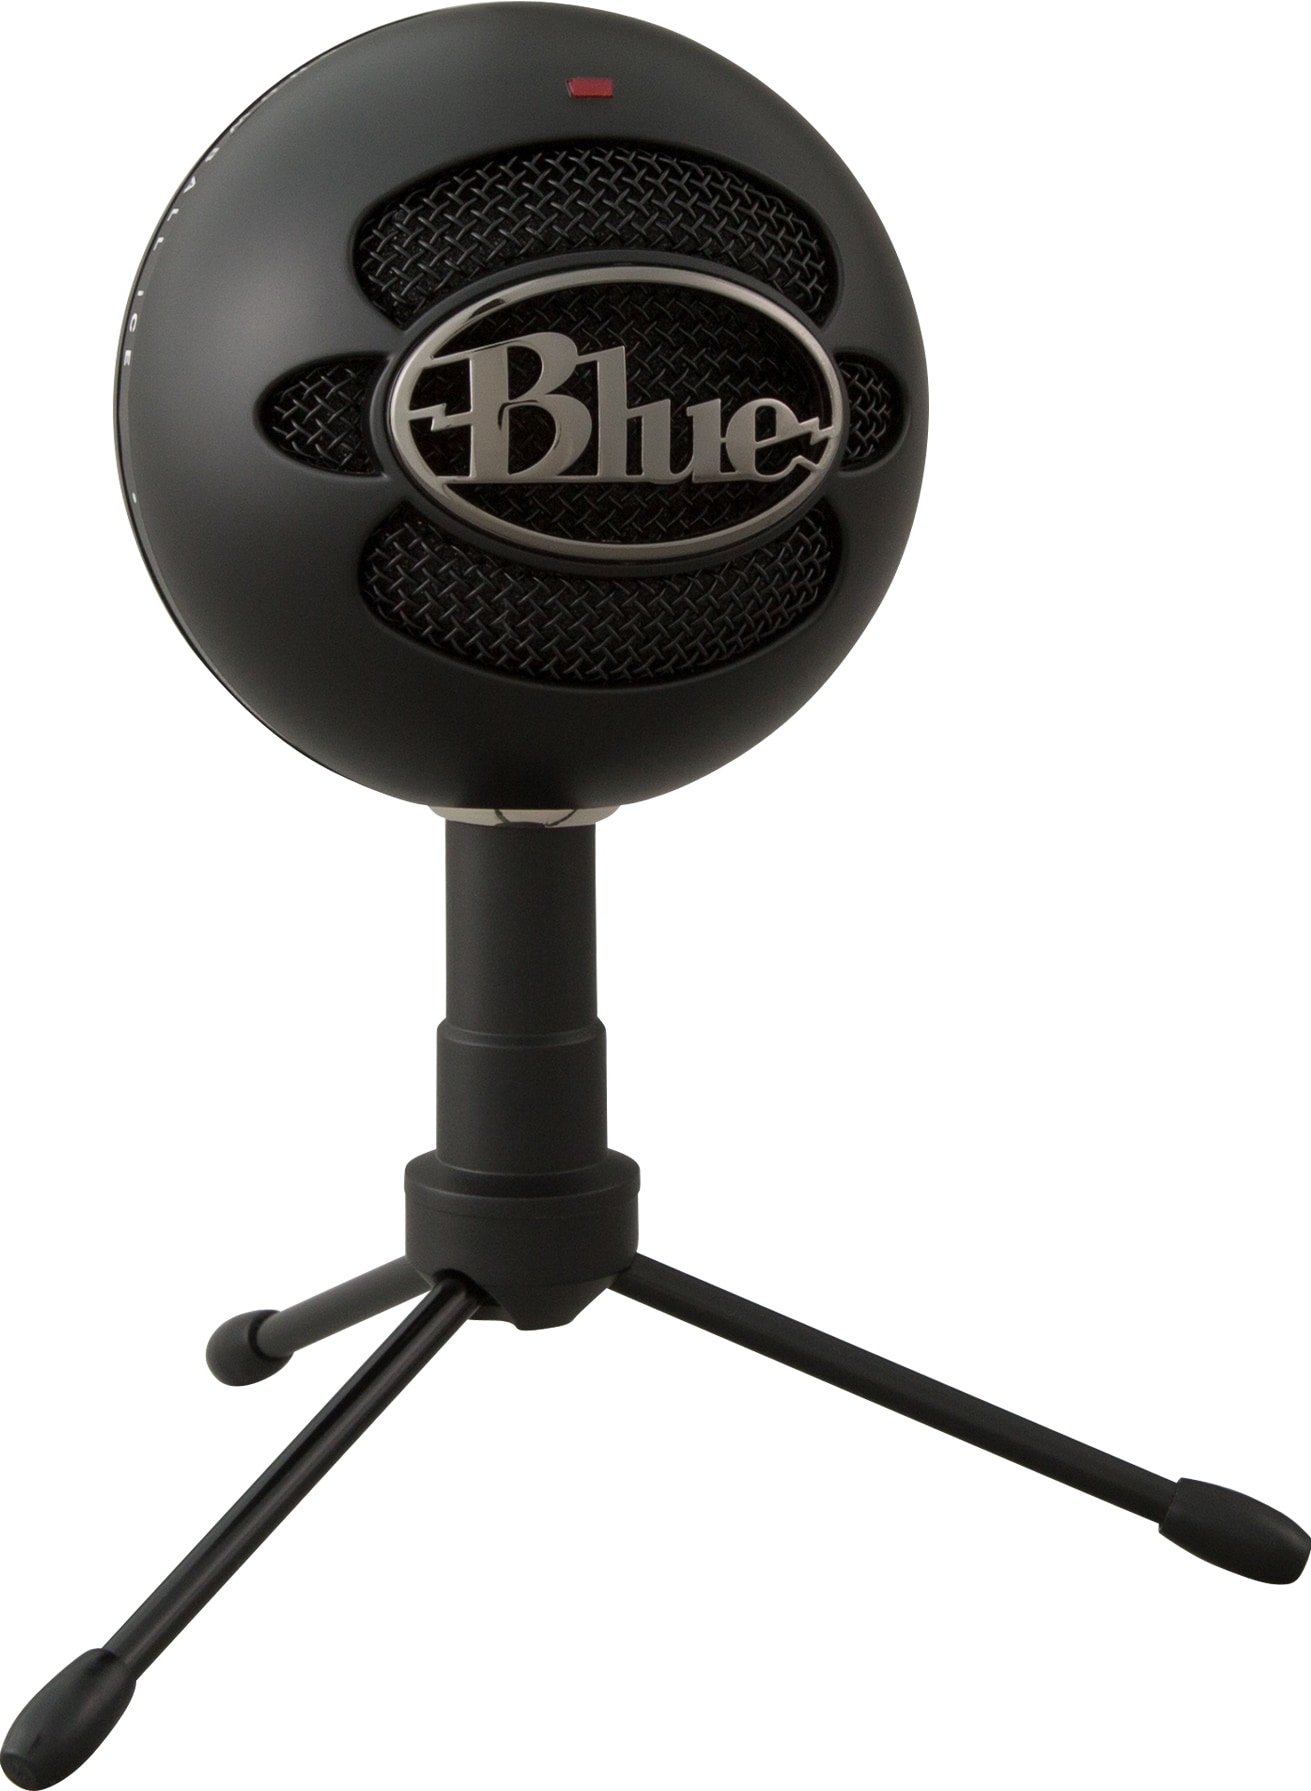 Blue Microphones Snowball iCE mikrofon - sort | Elgiganten